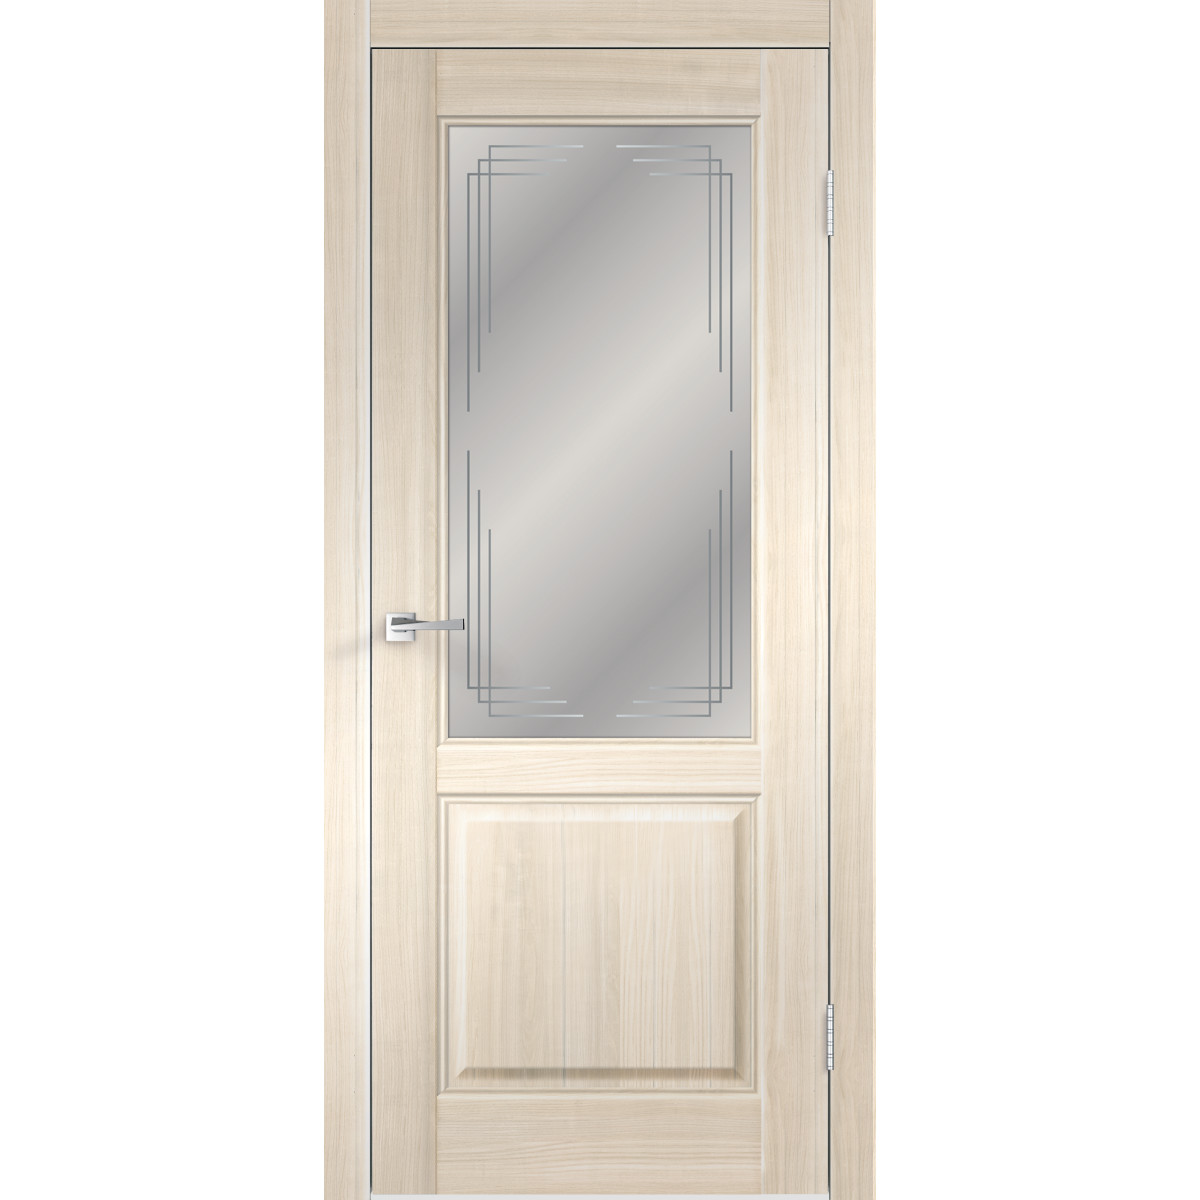 Дверь межкомнатная остеклённая Вилла 2Р 80х200 см с фурнитурой, ПВХ, цвет японский ясень